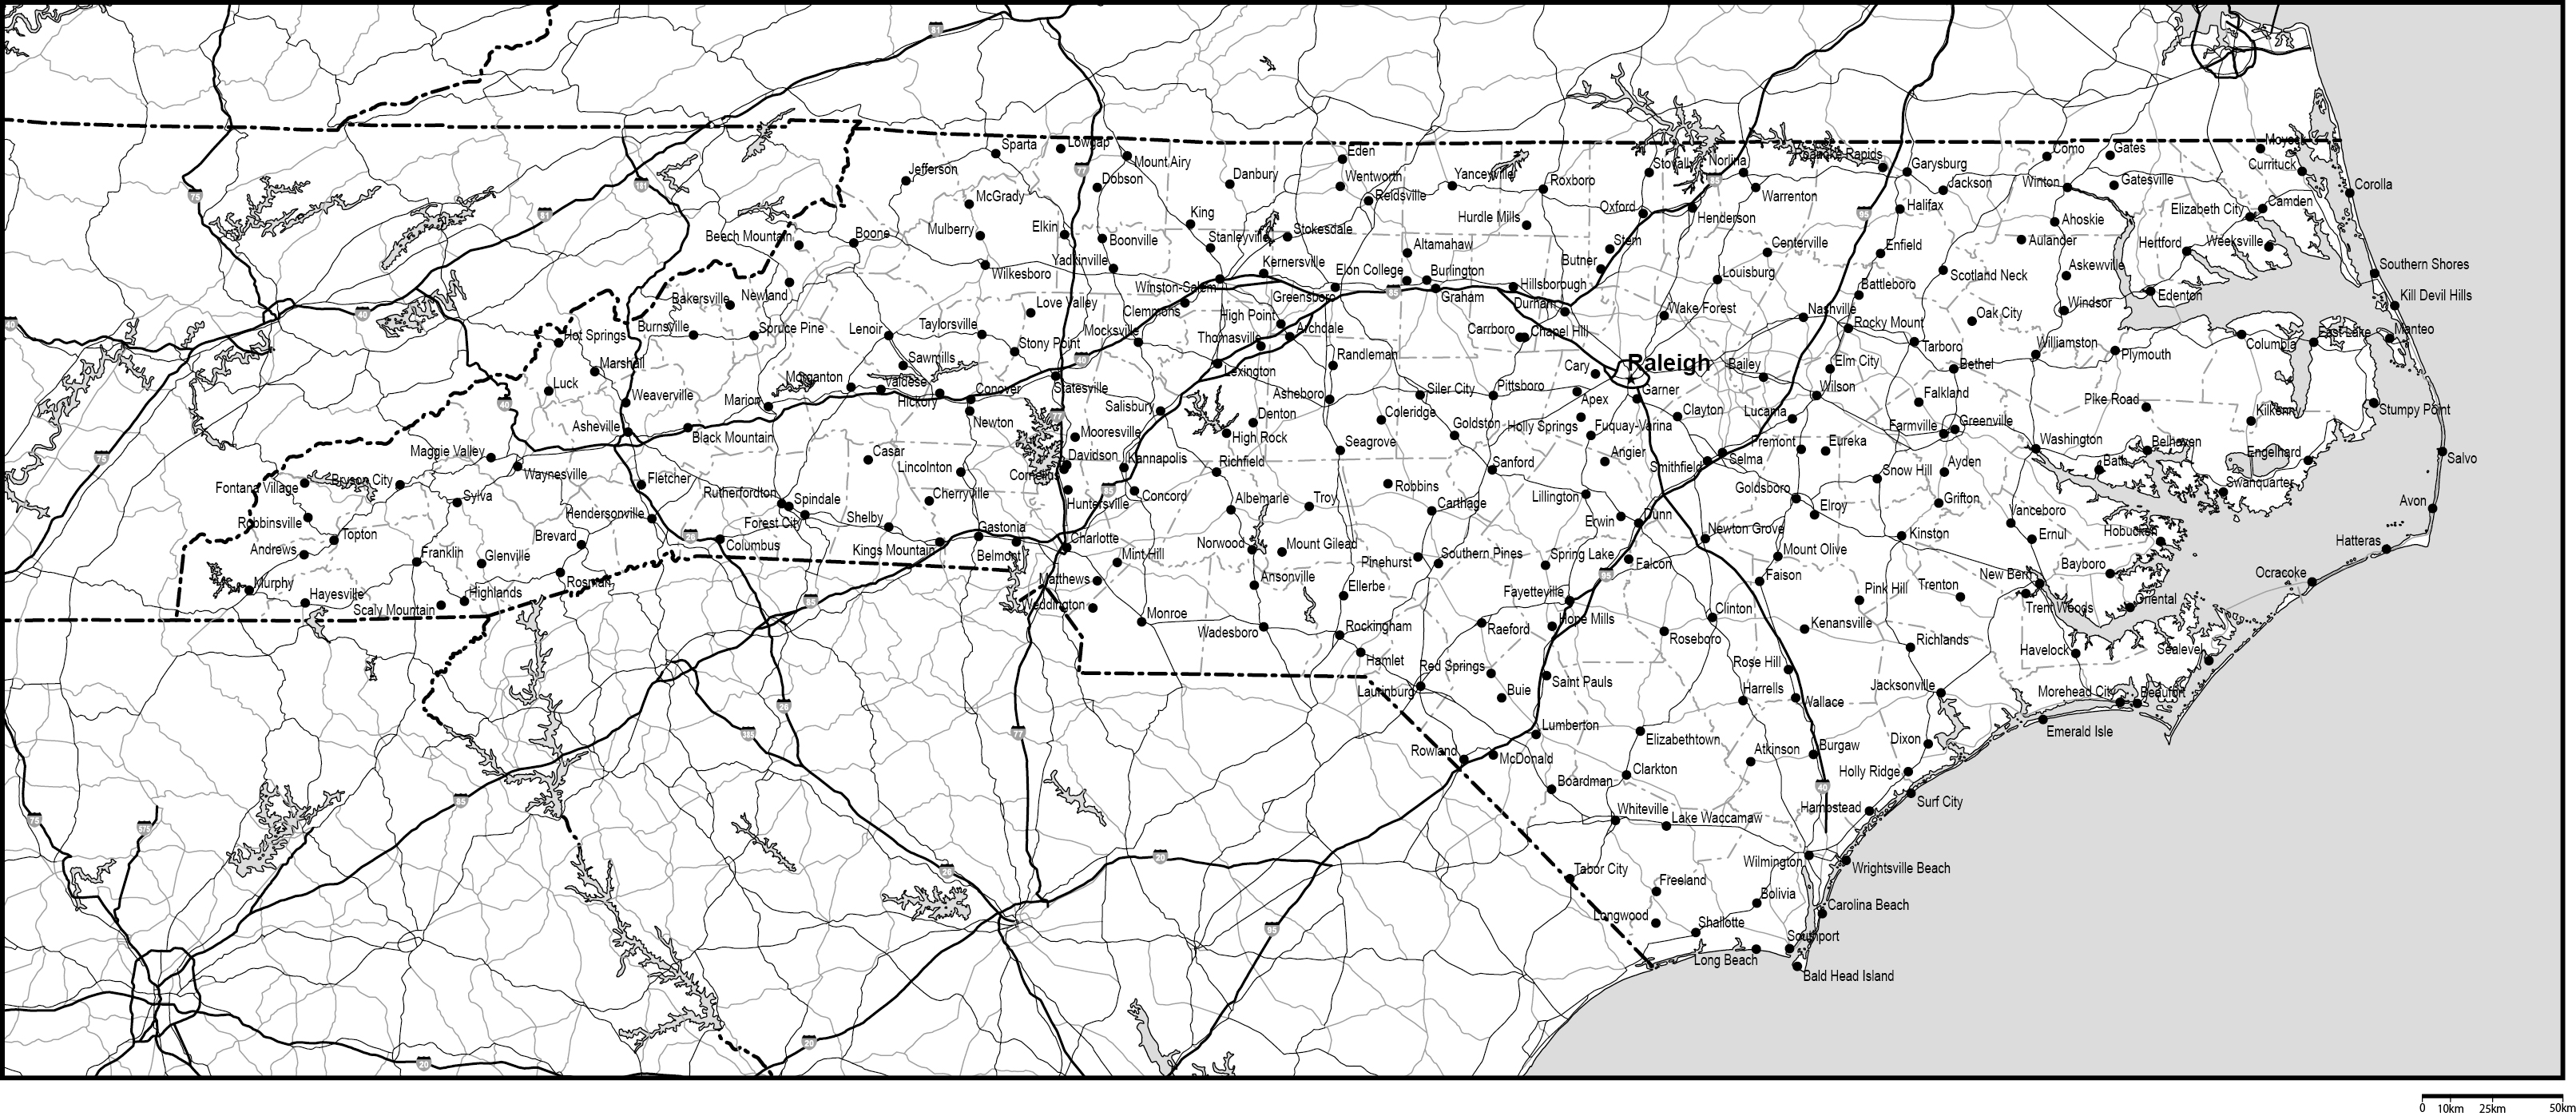 ノースカロライナ州郡分け白地図州都・主な都市・道路あり(英語)フリーデータの画像